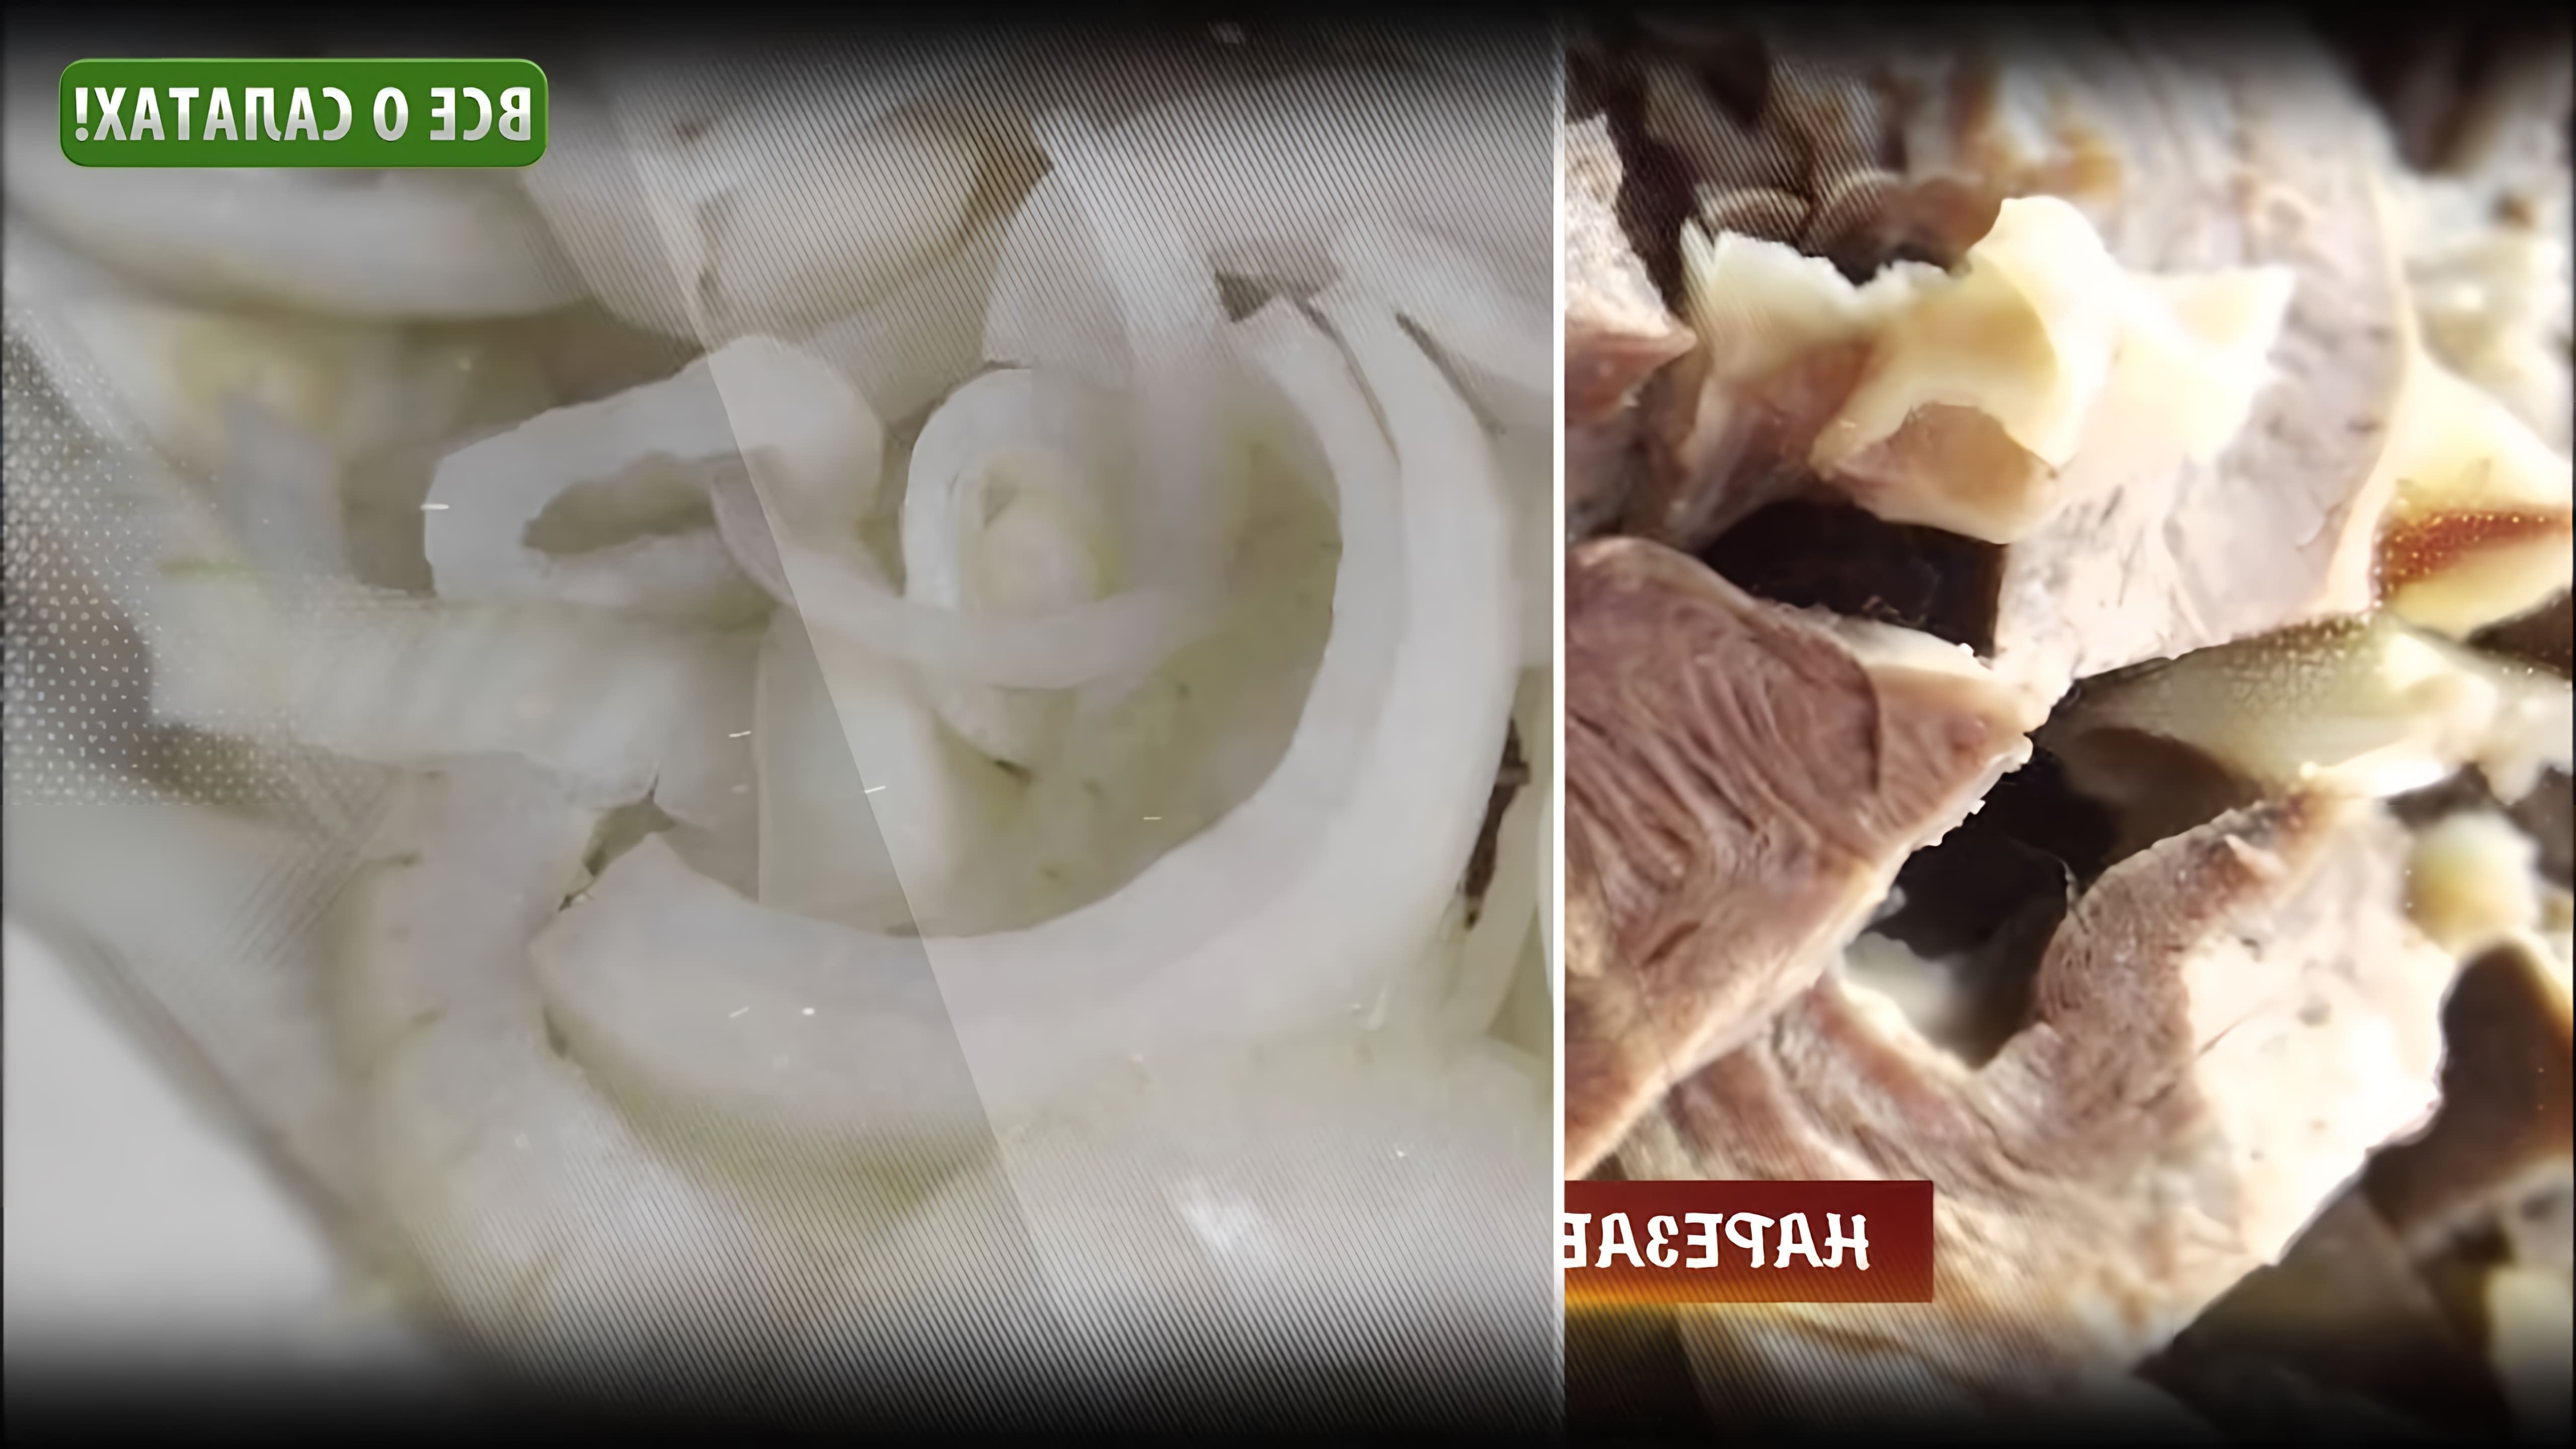 Видео-ролик под названием "Салат из говядины и квашеной капусты" представляет собой рецепт приготовления мясного салата